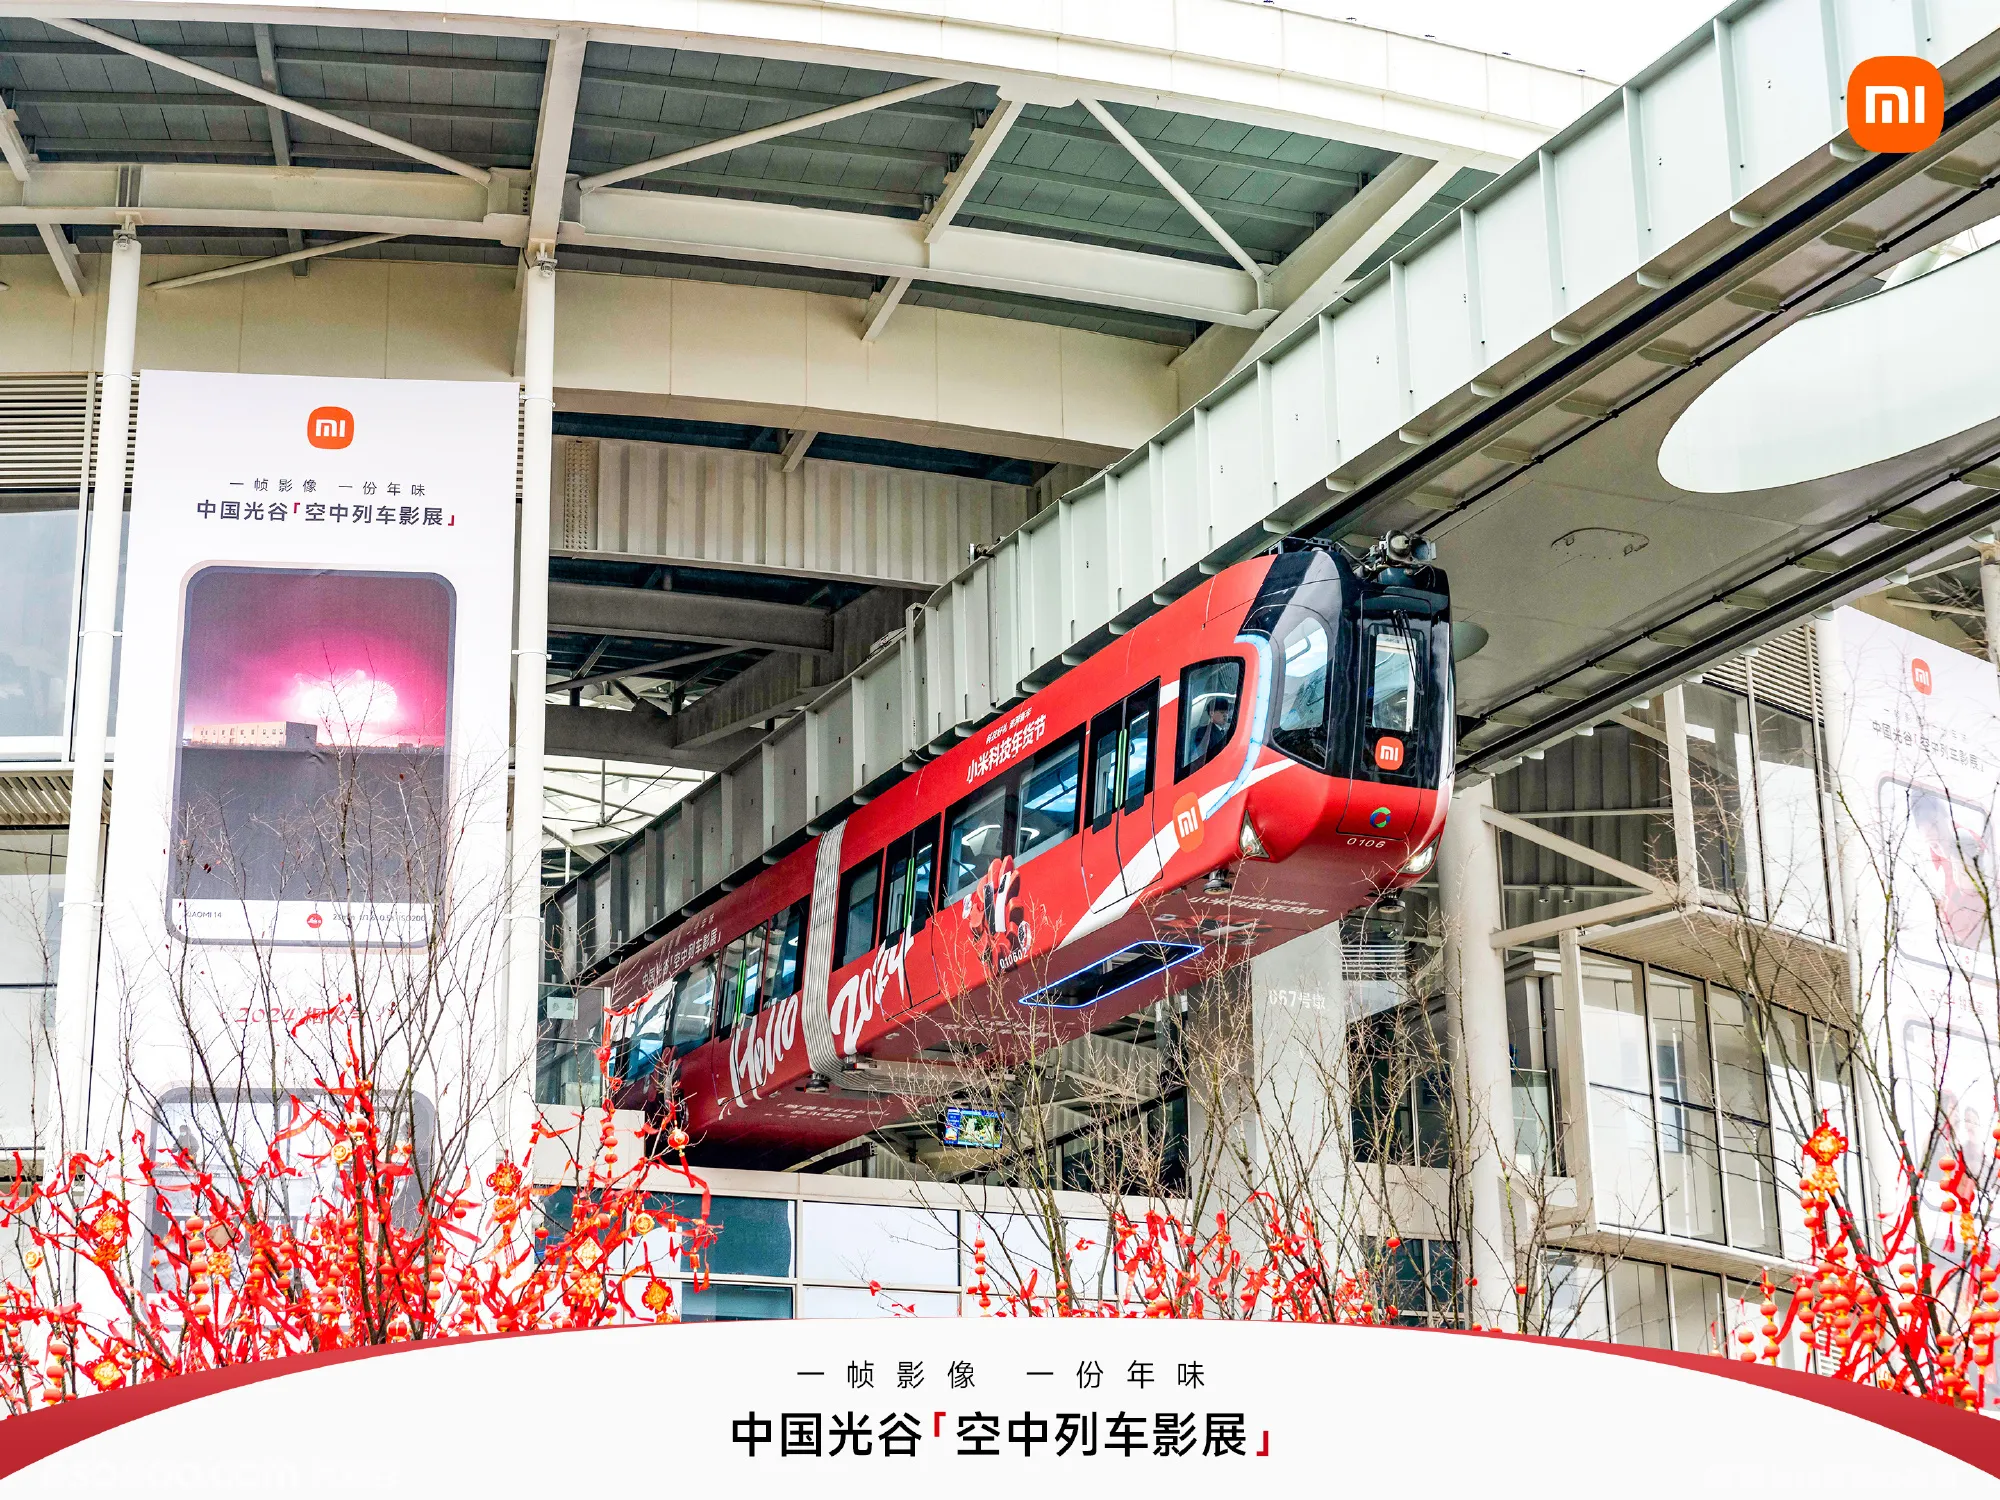 小米科技年货节 | 中国光谷「空中列车影展」